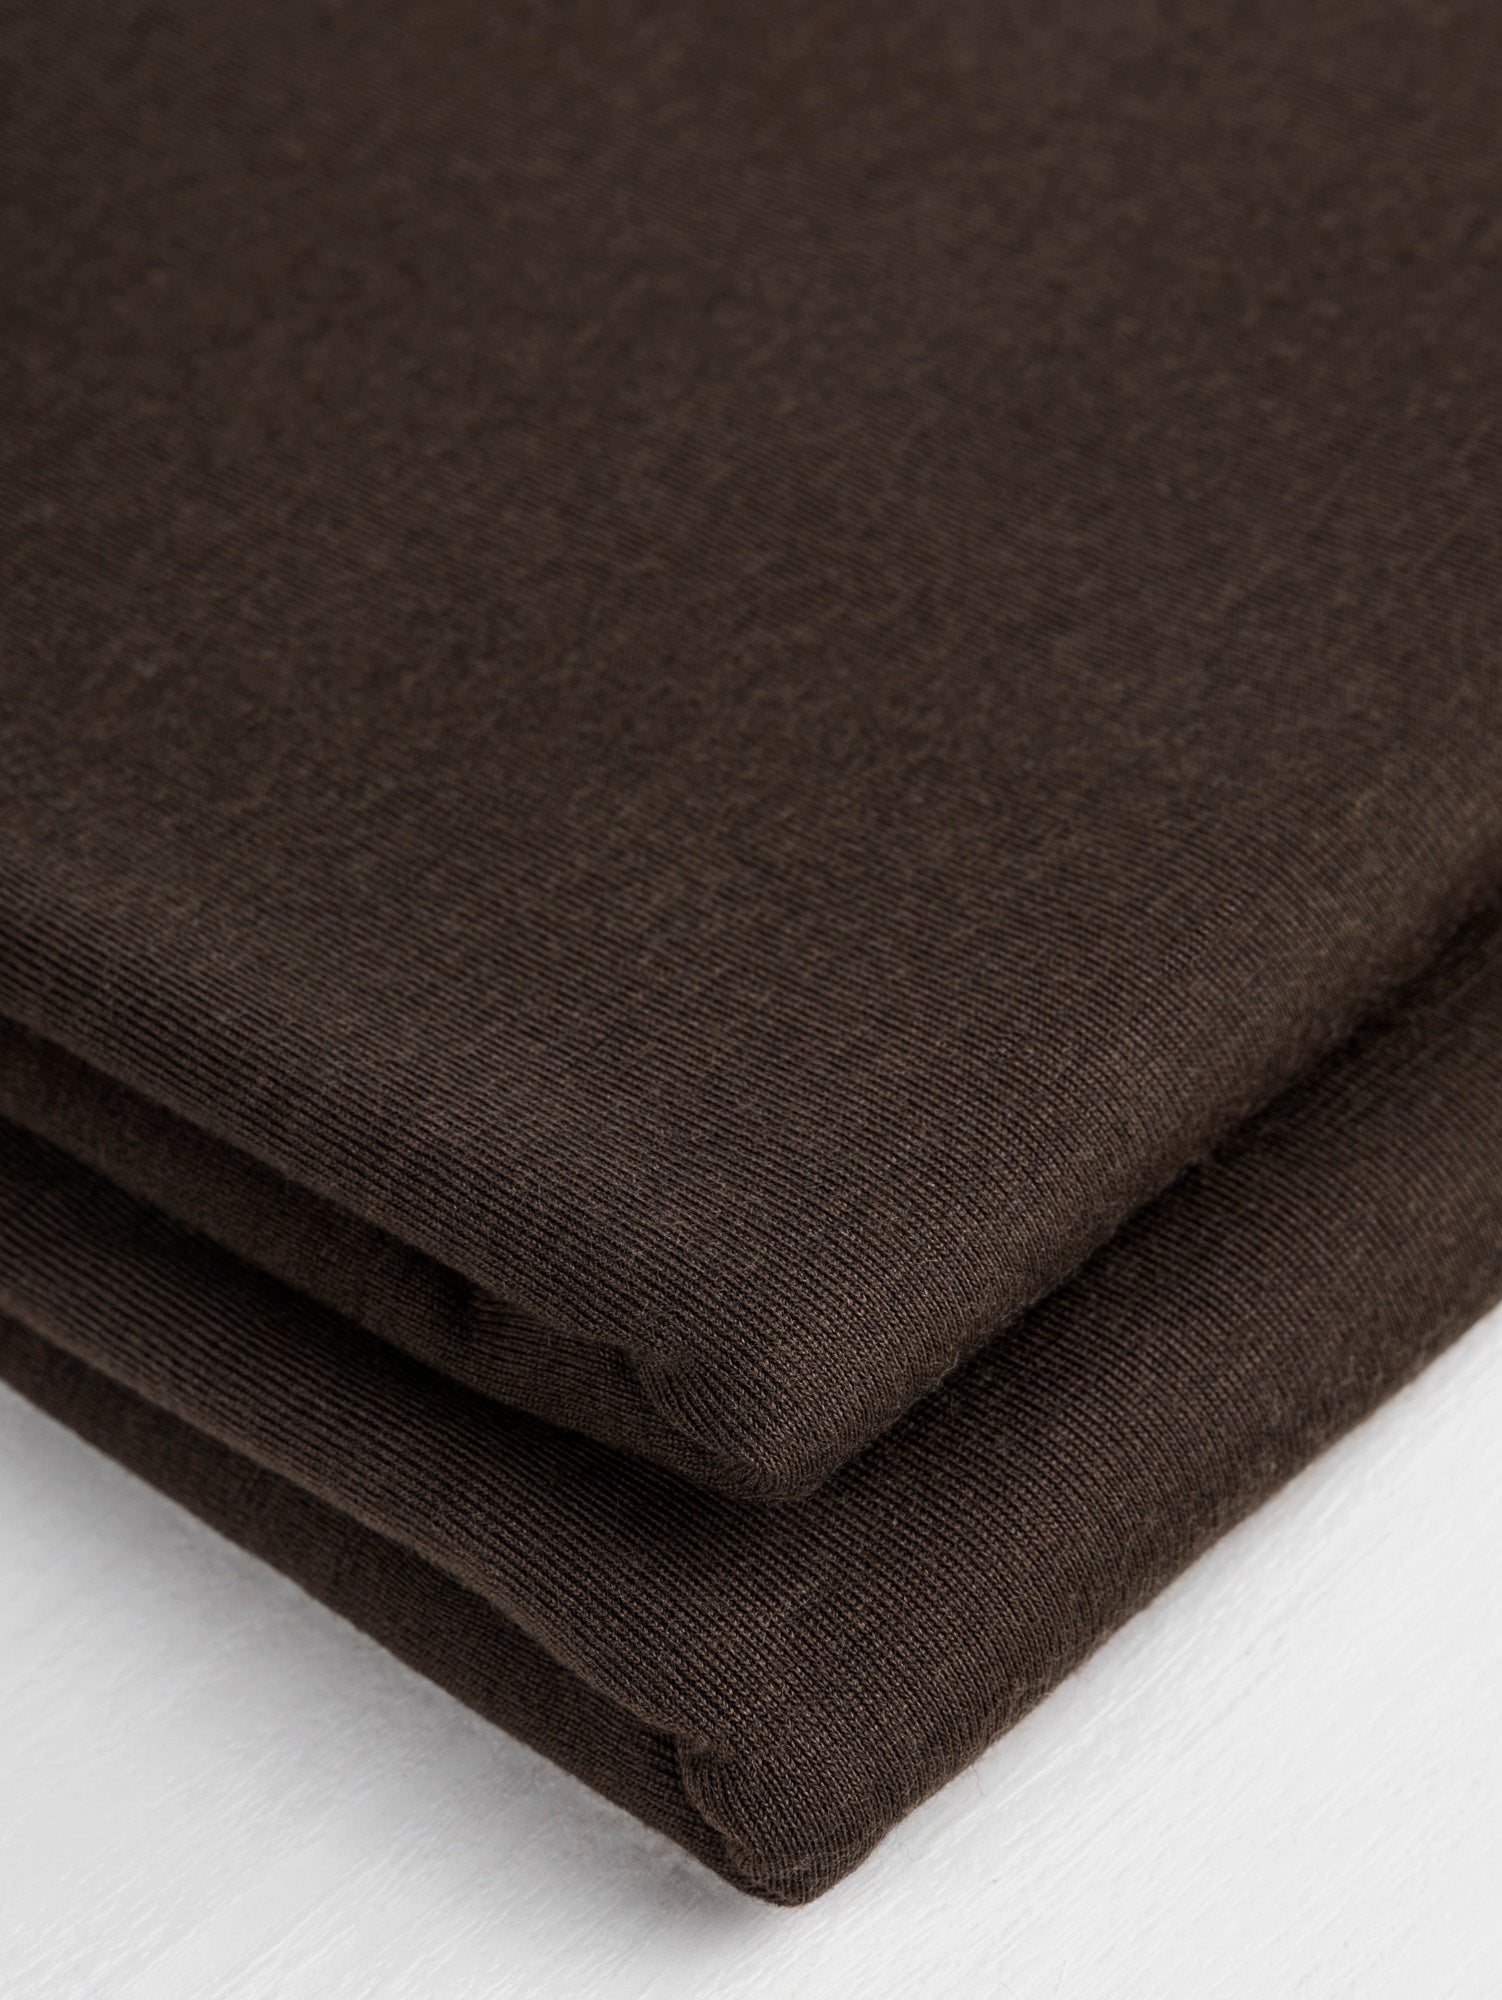 Lightweight 100% Merino Wool Jersey Knit Deadstock - Espresso | Core Fabrics